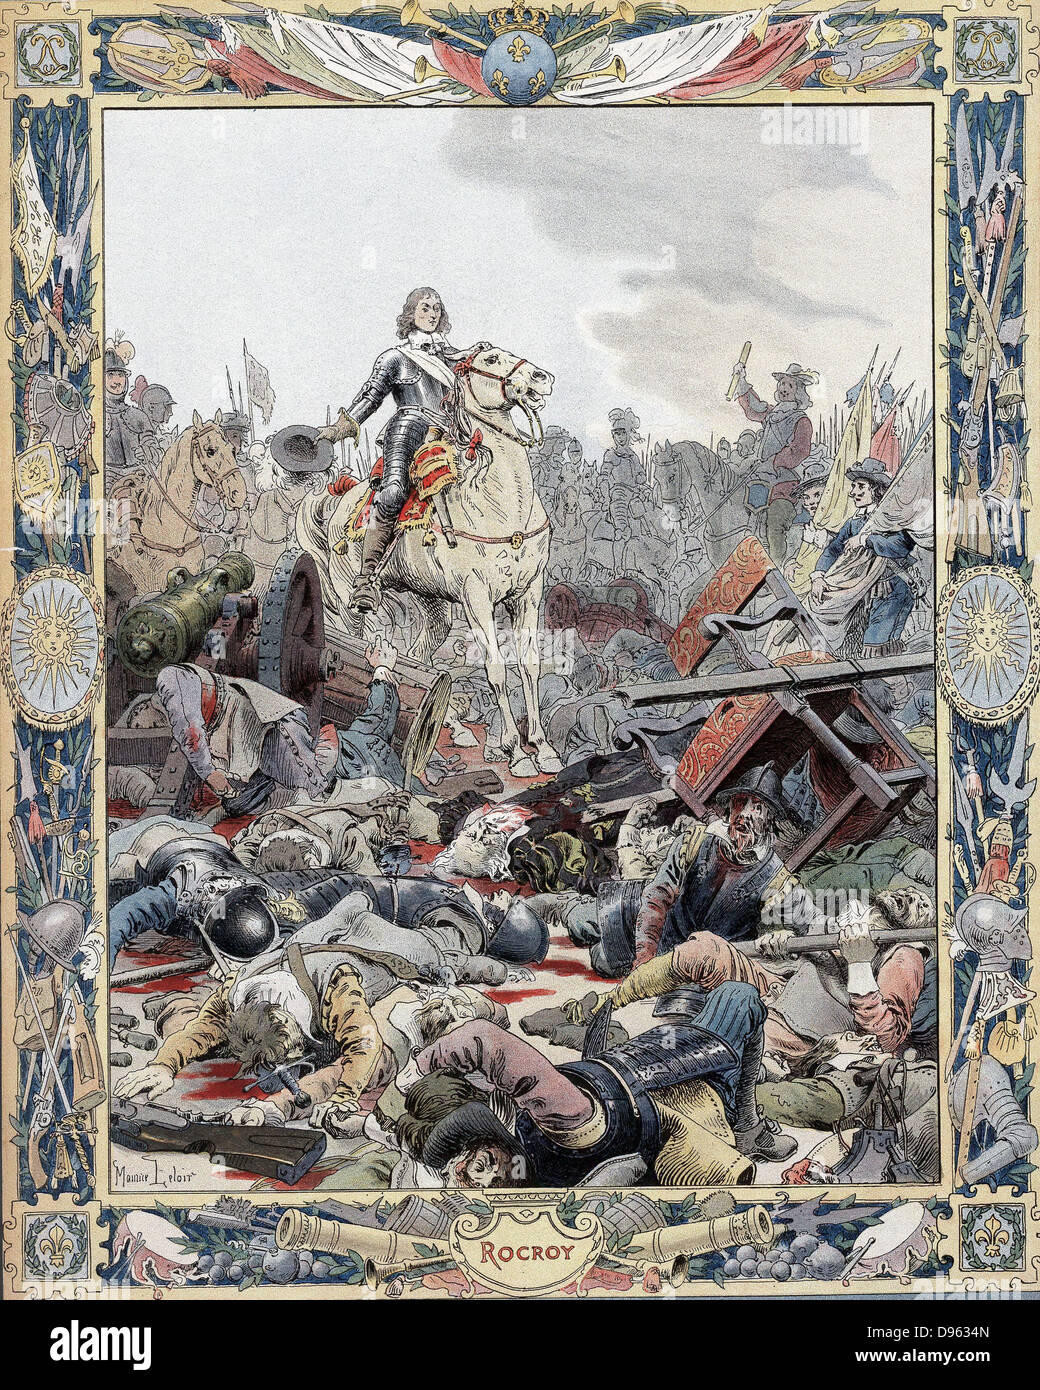 Dreißig Jahre Krieg: Schlacht von Rocroi (rocroy), 19. Mai 1643, Spanisch besiegt durch die Franzosen unter Duc d'Enghien, Prince de Conde (1621-1686), bekannt als der Große (Grand) Conde. Stockfoto